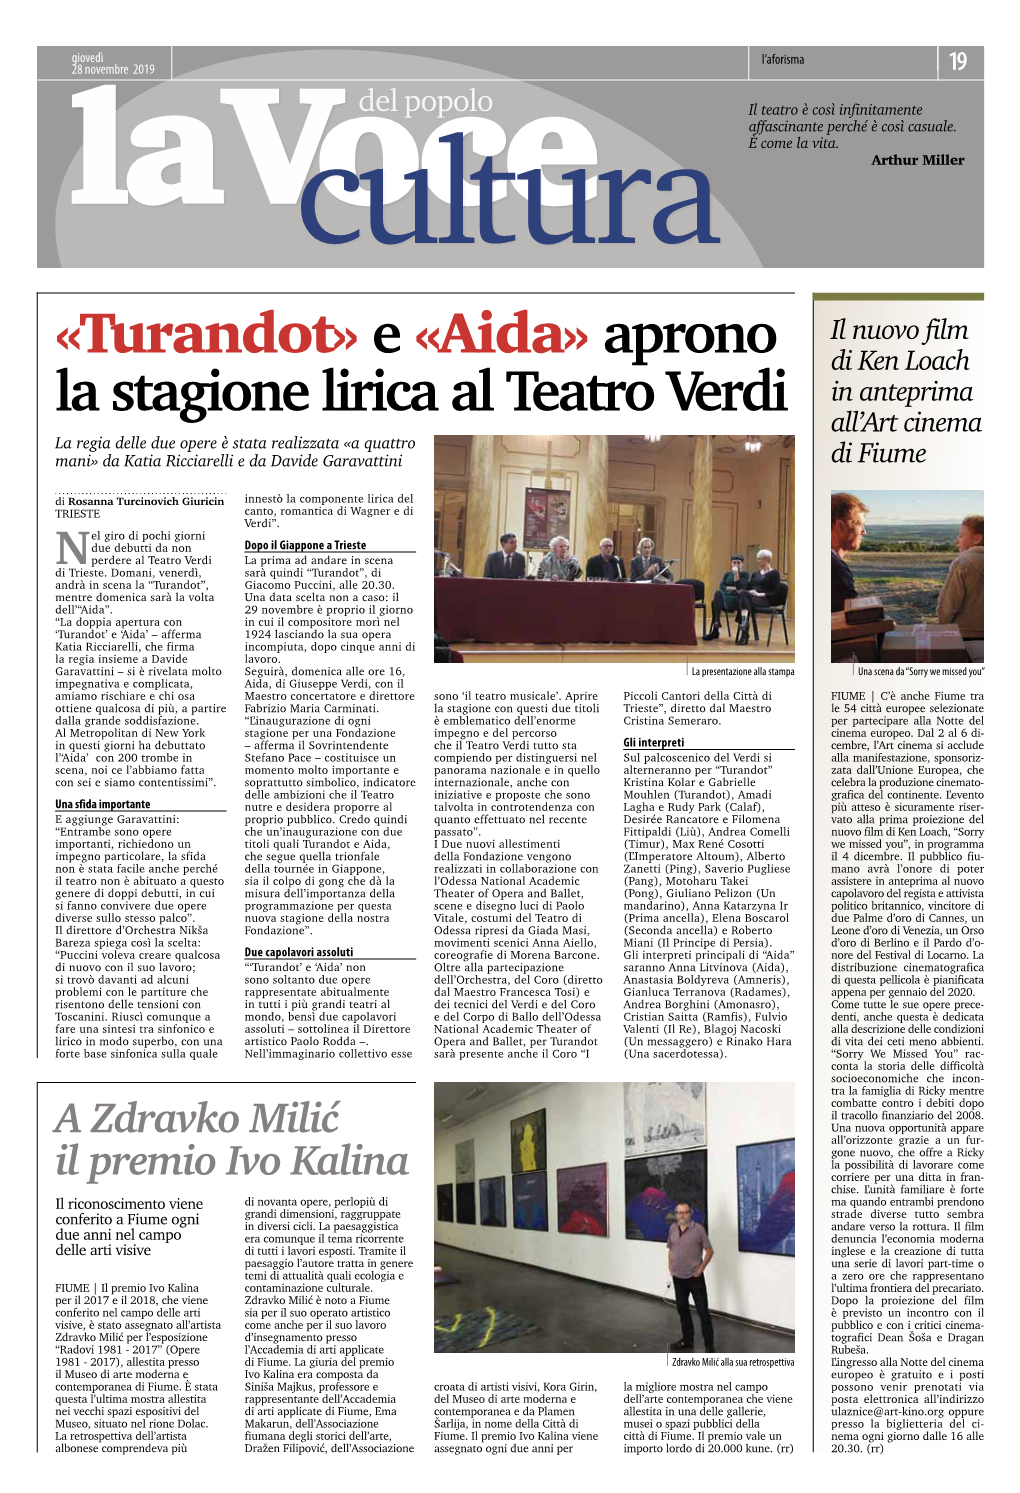 «Turandot» E «Aida» Aprono La Stagione Lirica Al Teatro Verdi